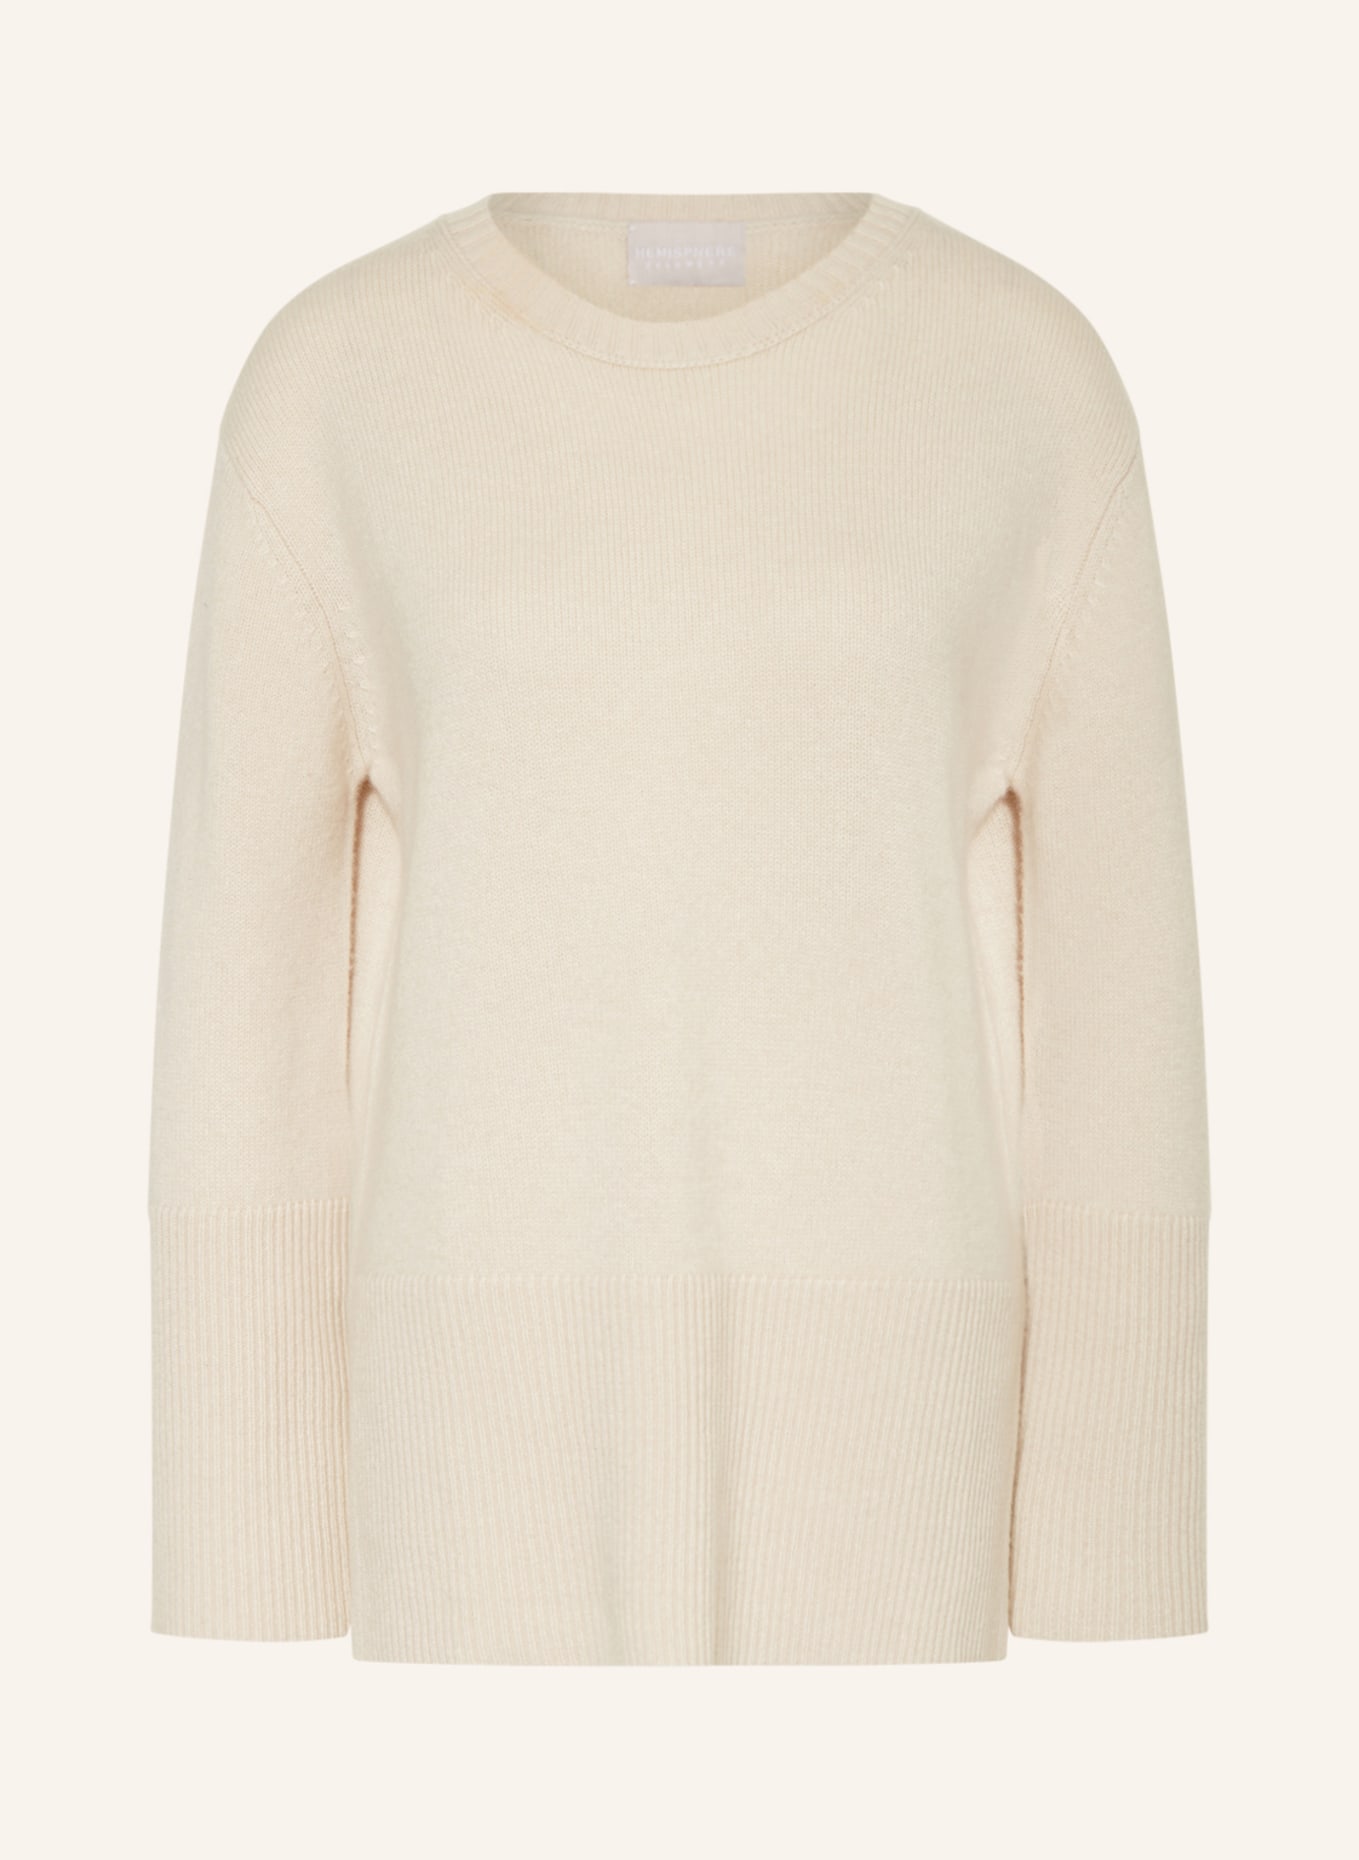 HEMISPHERE Cashmere sweater, Color: CREAM (Image 1)